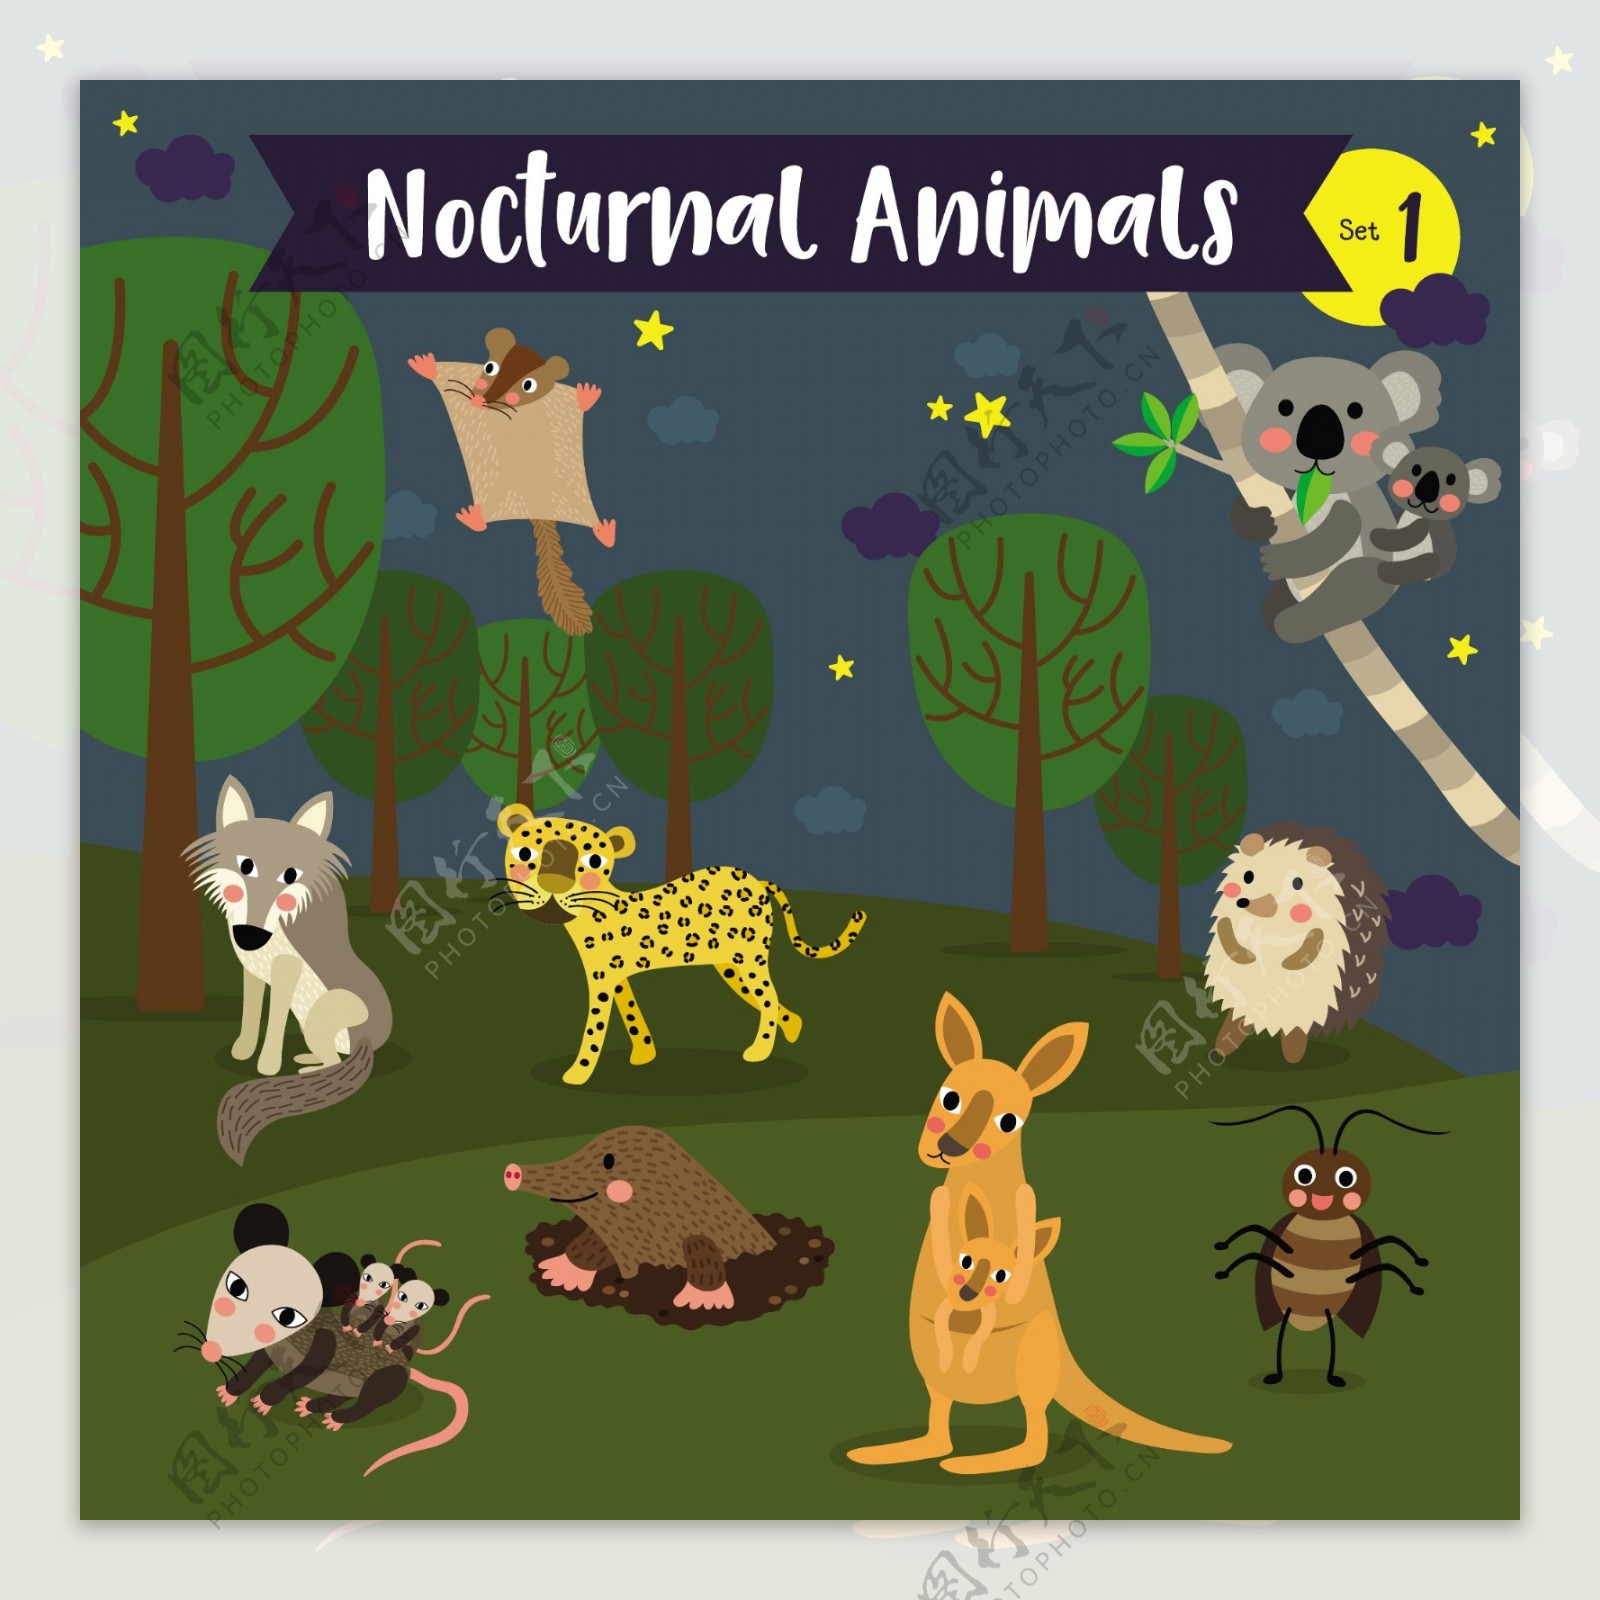 森林野生动物卡通形象矢量素材